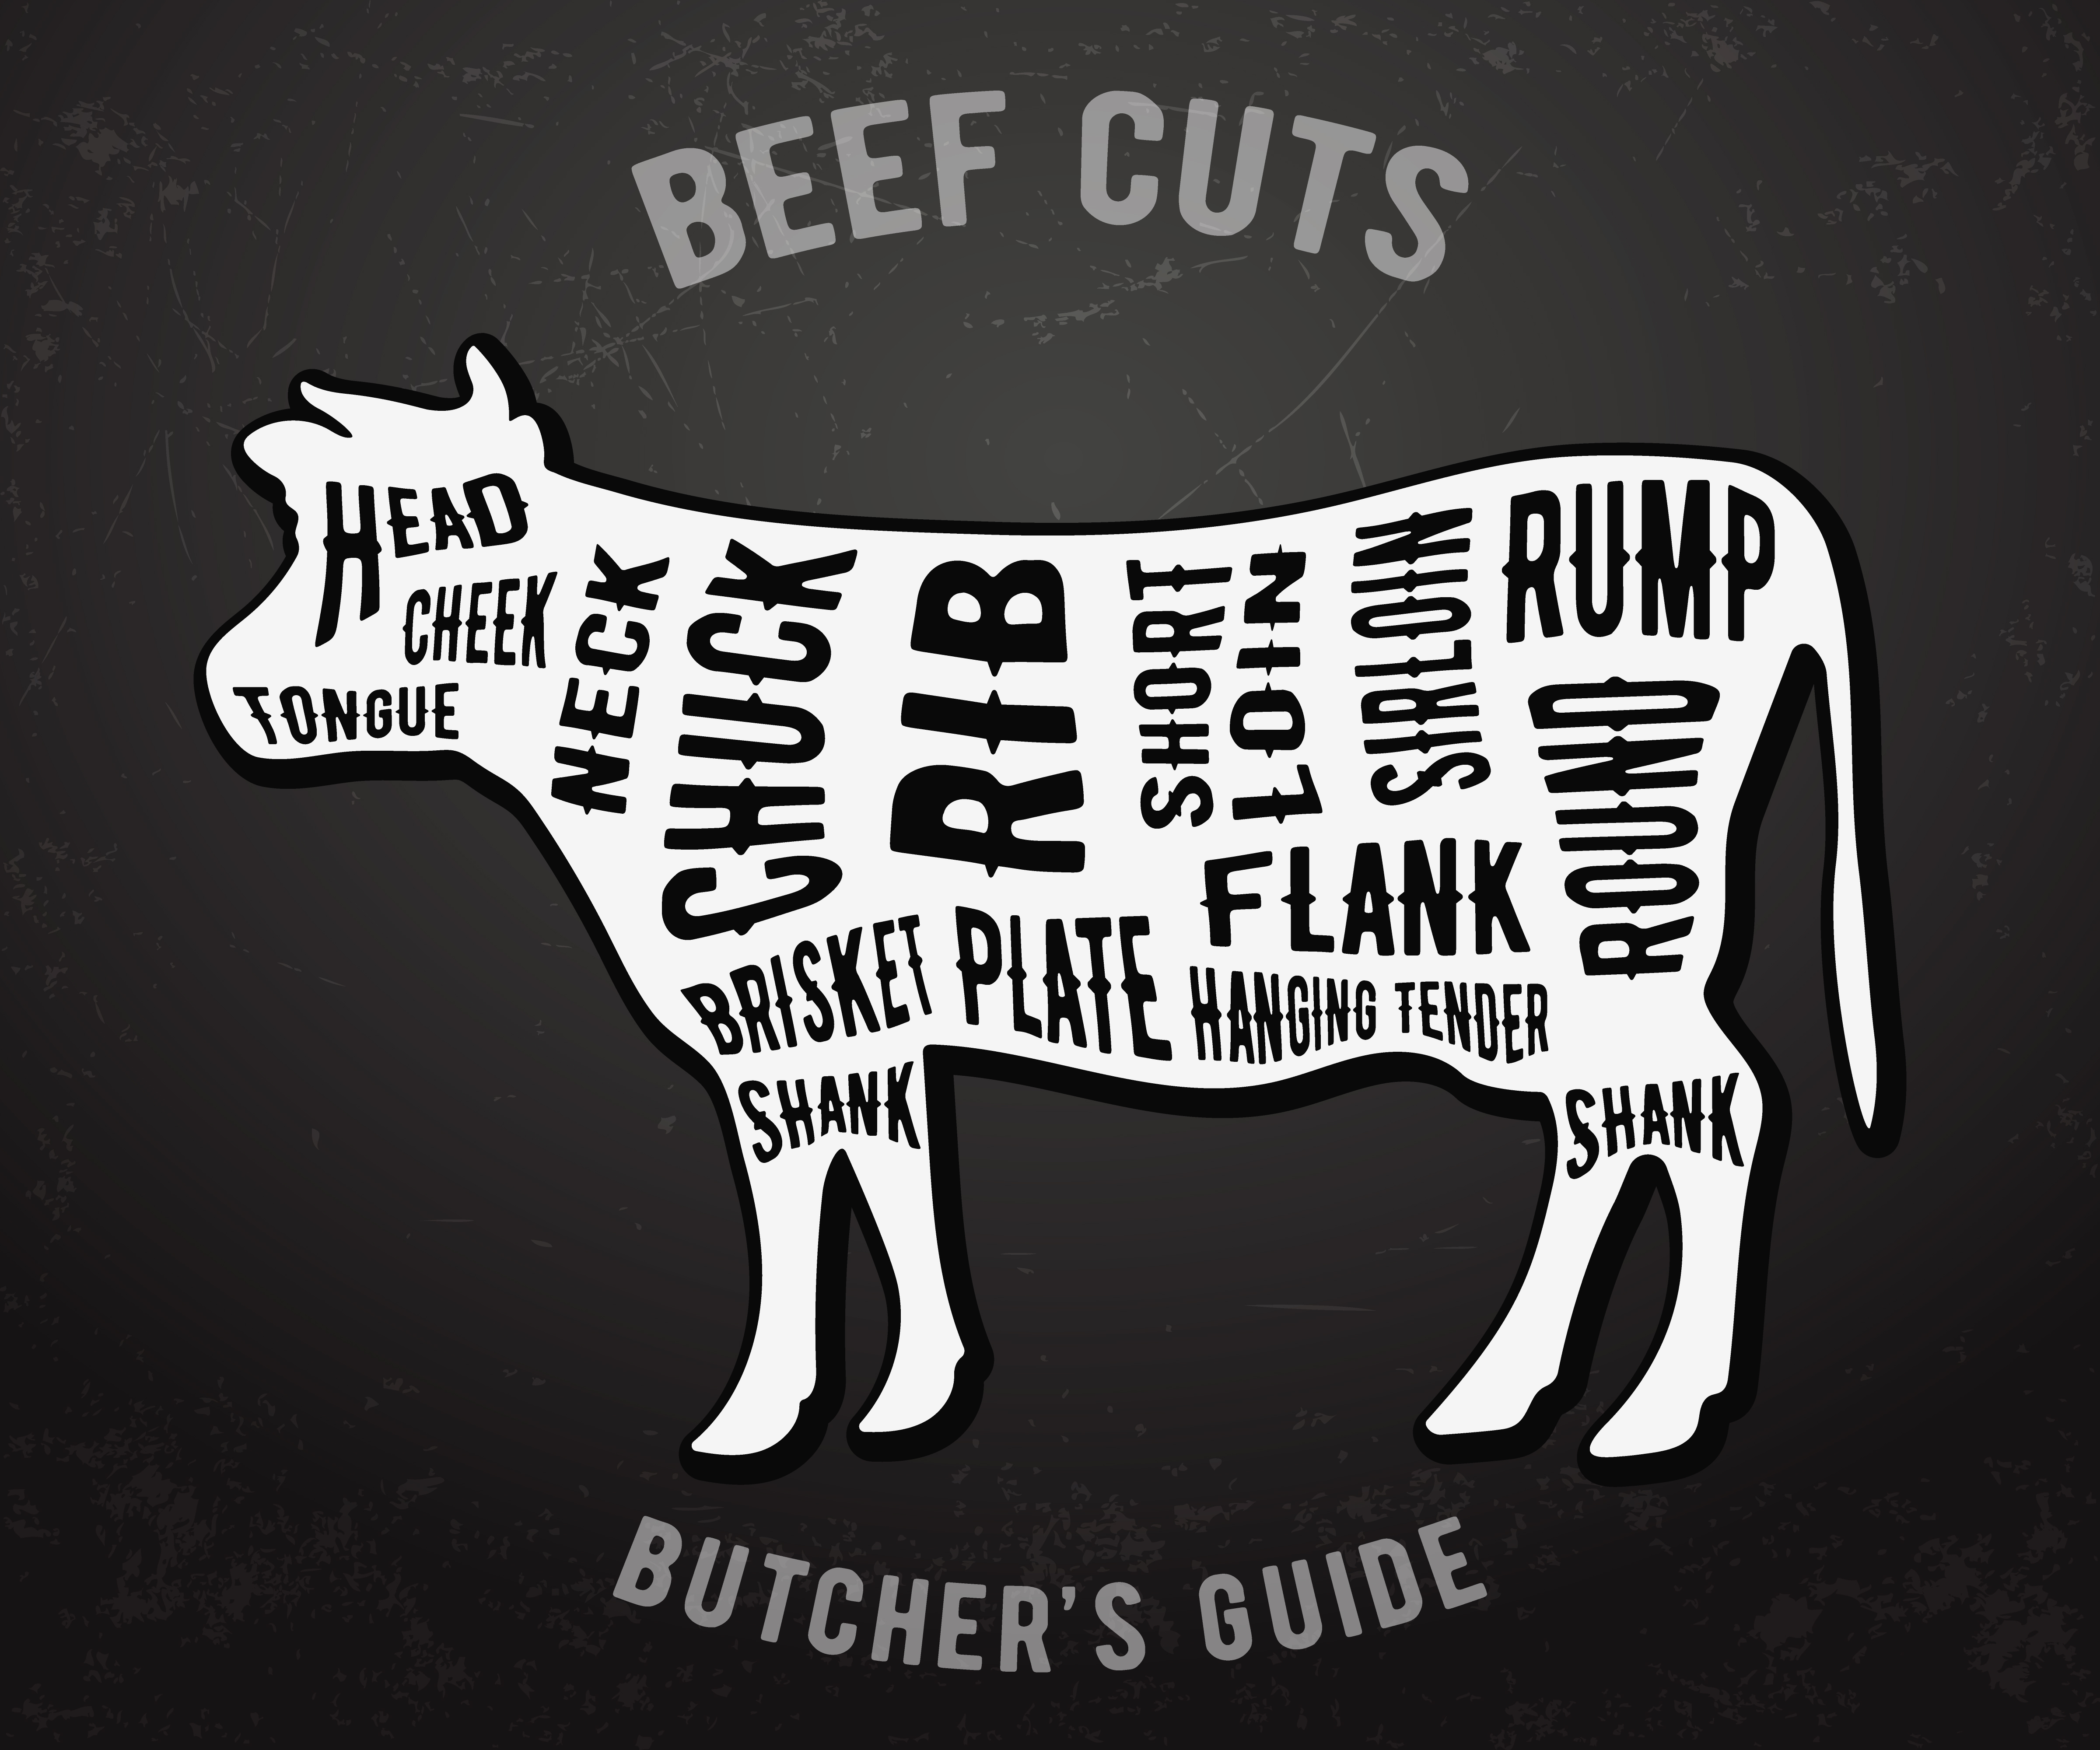 Butcher Guide Beef Cuts Download Free Vectors Clipart Graphics Vector Art